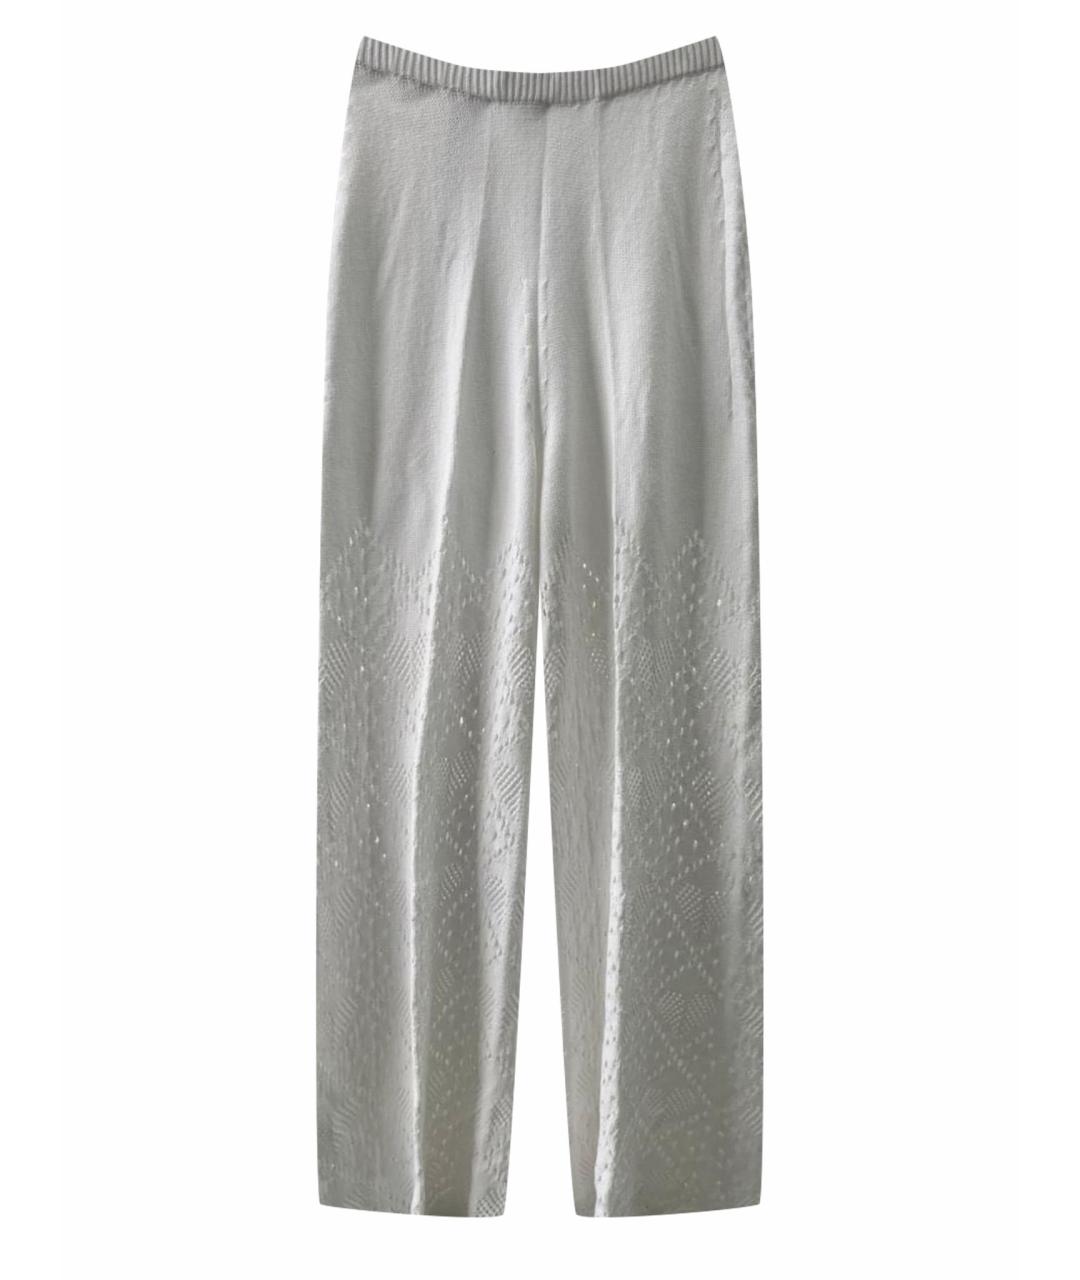 TWIN-SET Белые хлопковые брюки широкие, фото 1